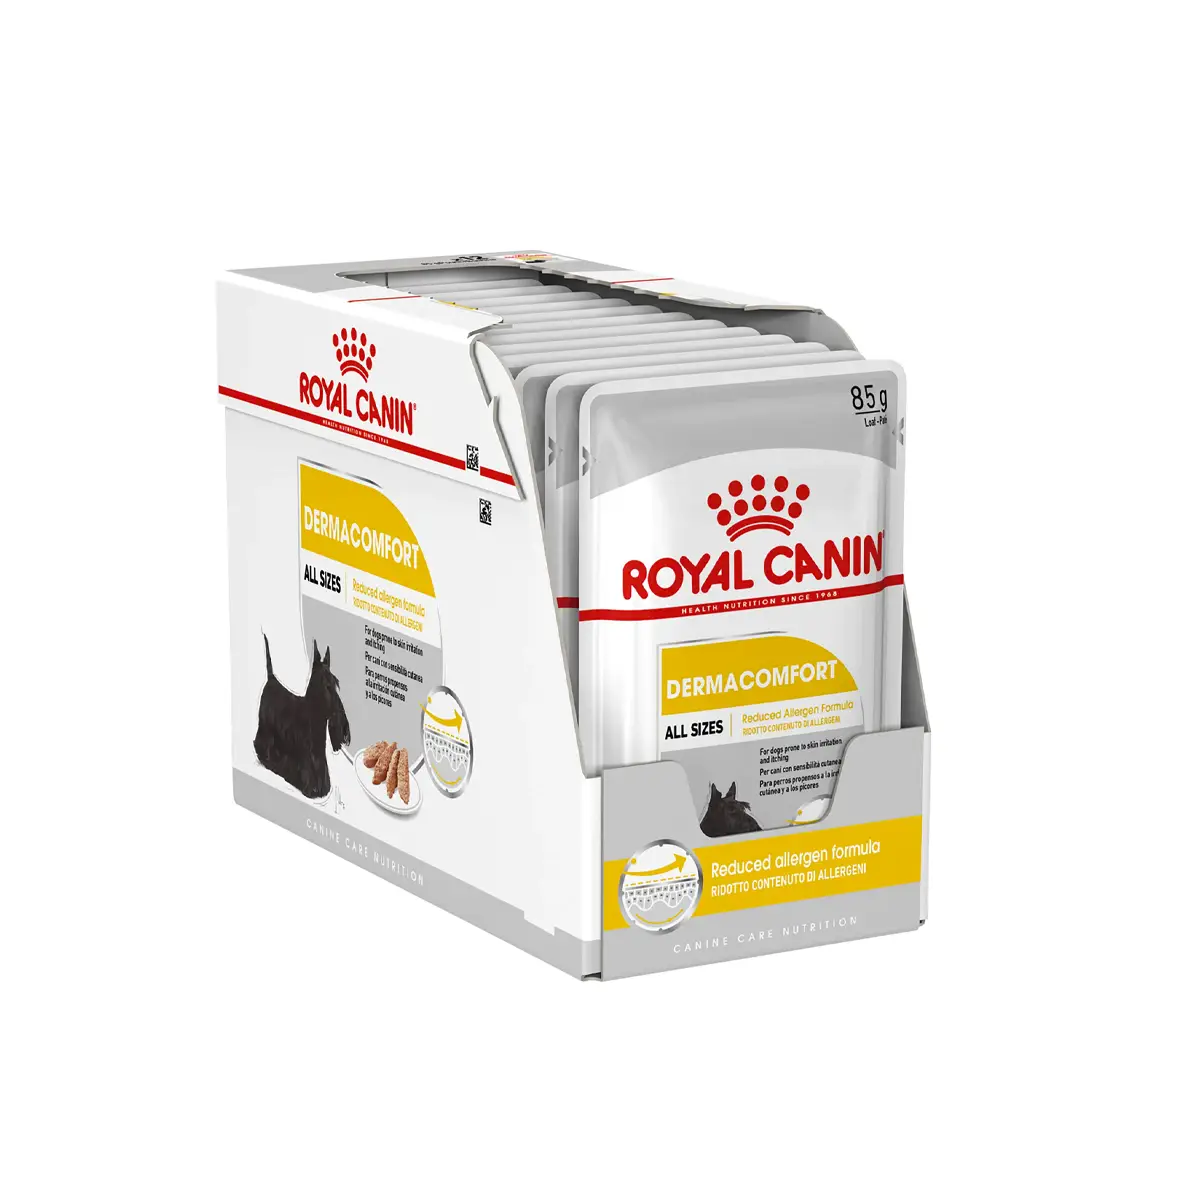 Royal Canin - Dermacomfort Dog Loaf Wet Food 85g